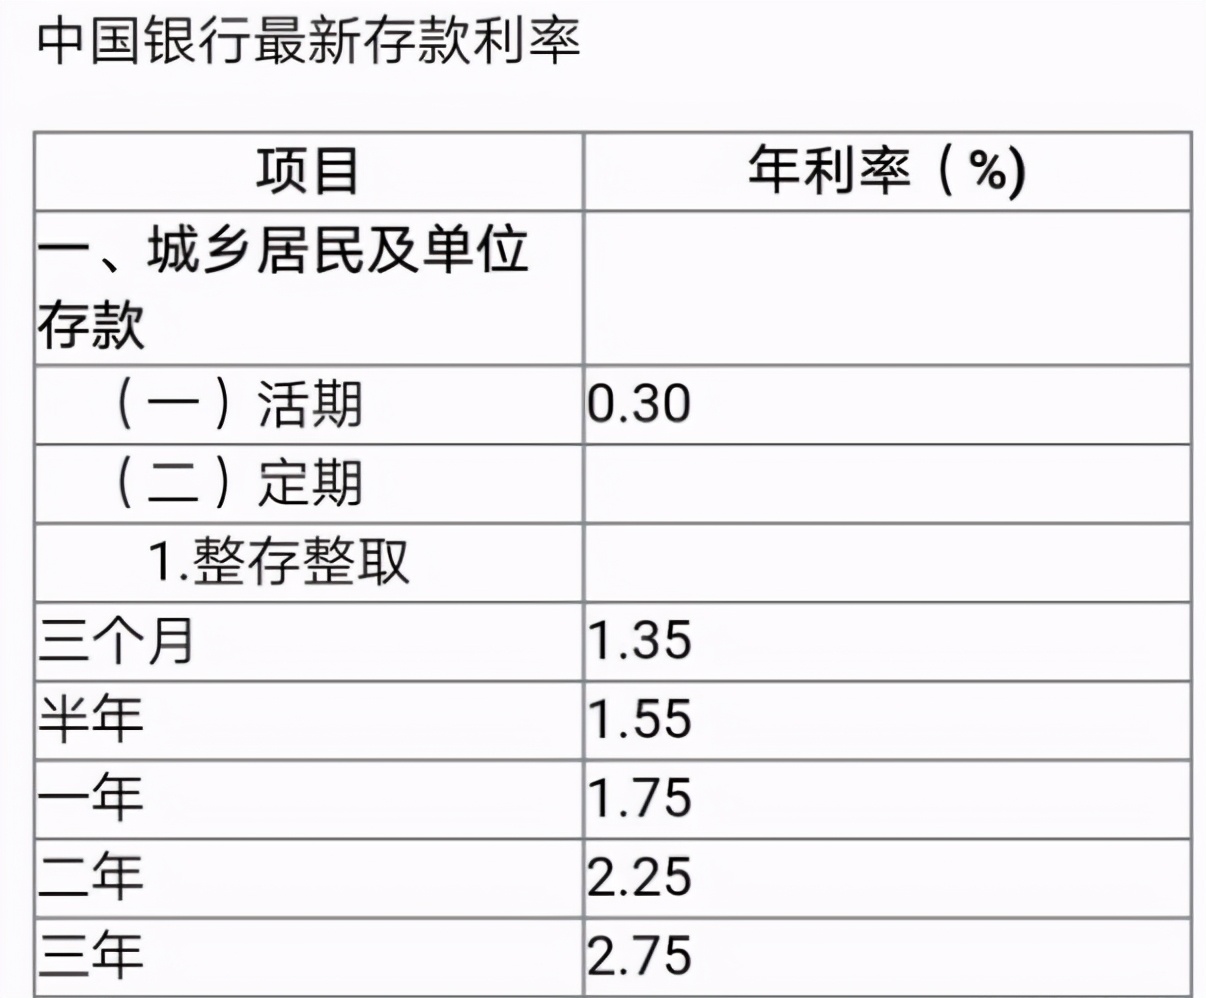 75%中国银行最新大额存款利率选择中国银行100万起的最新大额存单利率